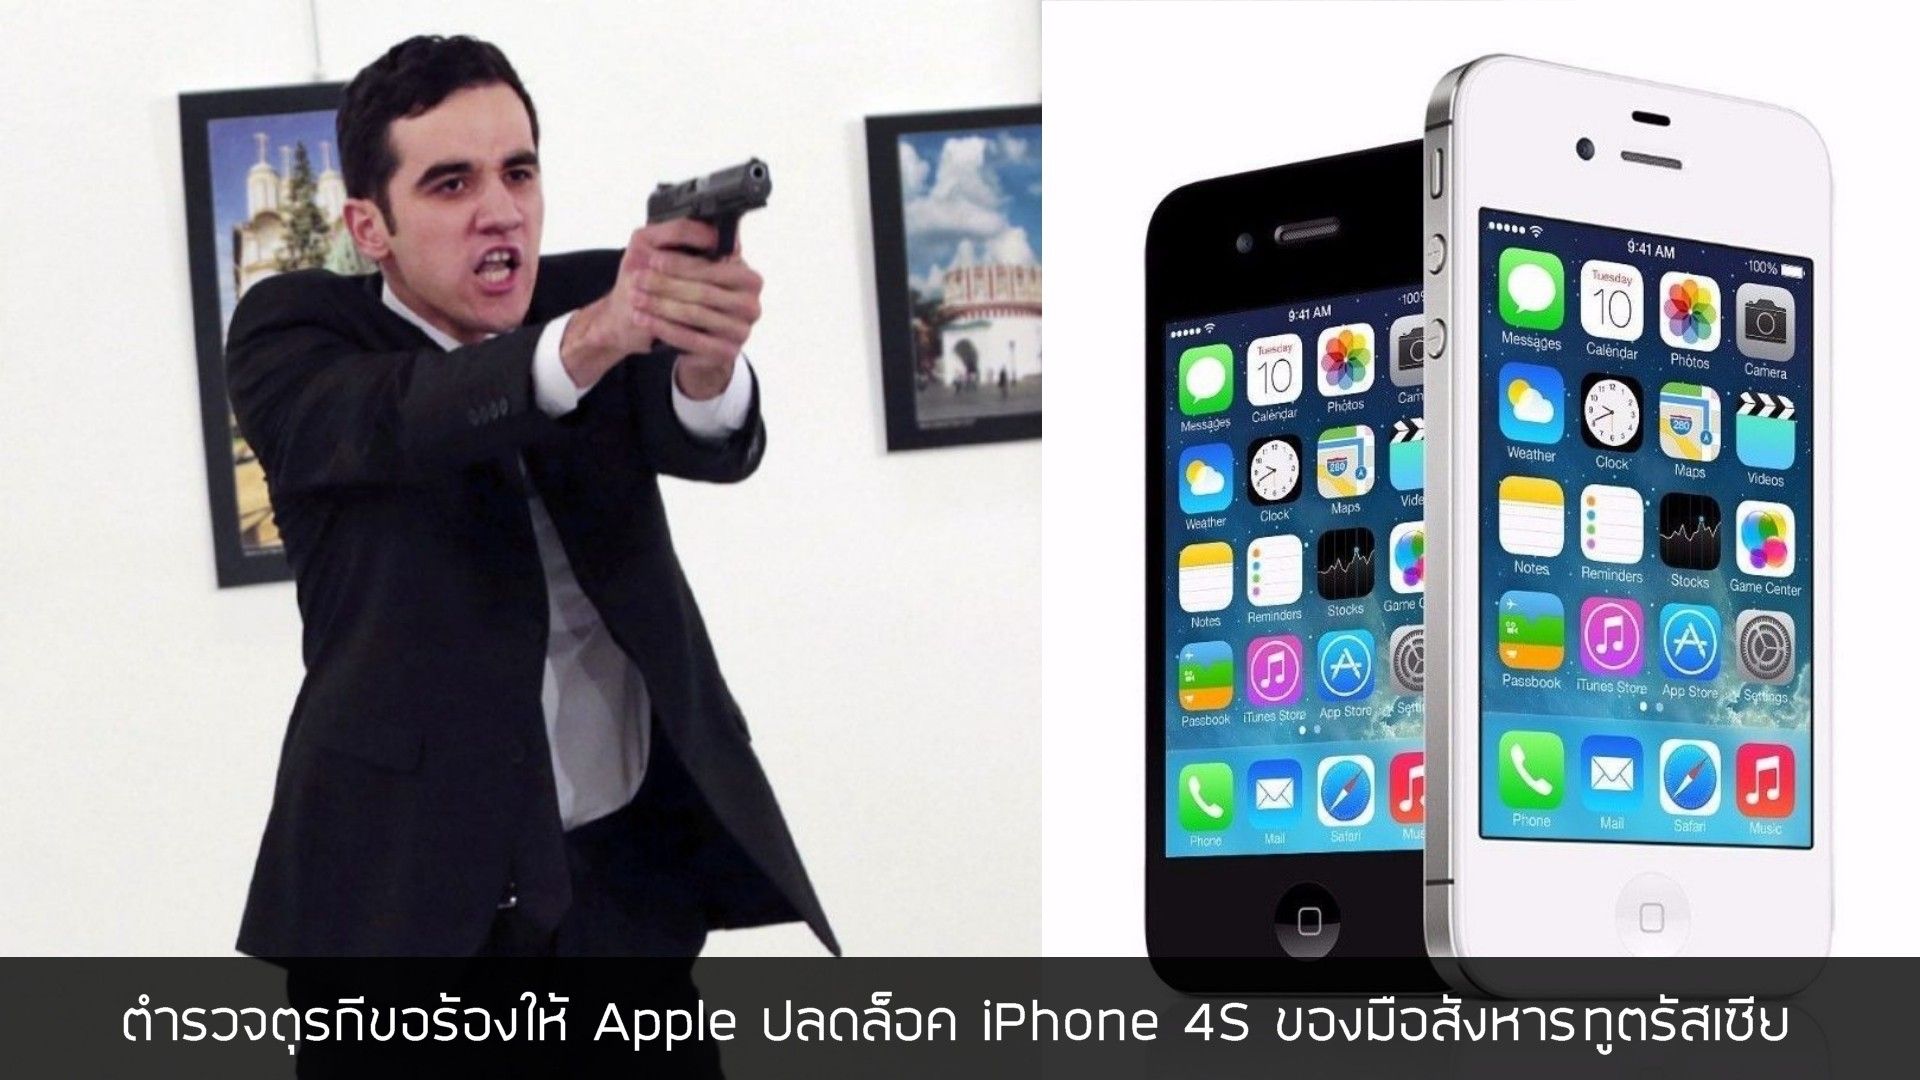 ตำรวจตุรกีขอร้องให้ Apple ช่วยปลดล็อค iPhone 4s ของมือสังหารทูตรัสเซีย